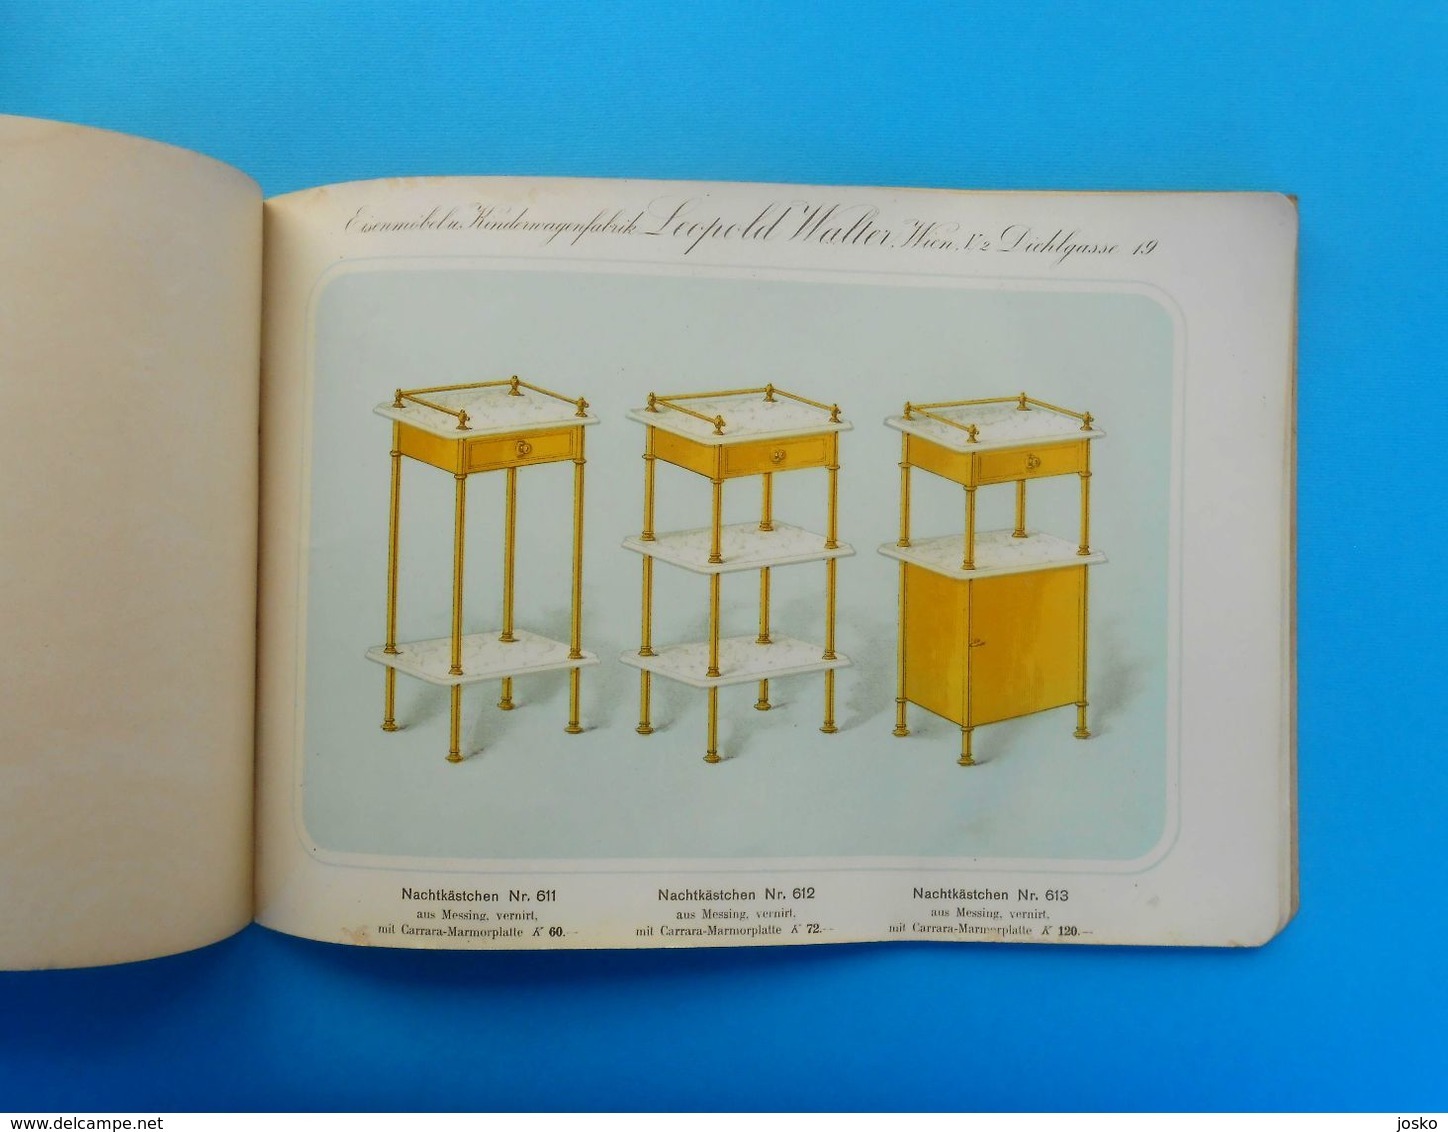 LEOPOLD WALTER (WIEN) MESSINGMOBEL FABRIK Austria antique catalog 1880s * Brass furniture Osterreich katalog Vienna RR